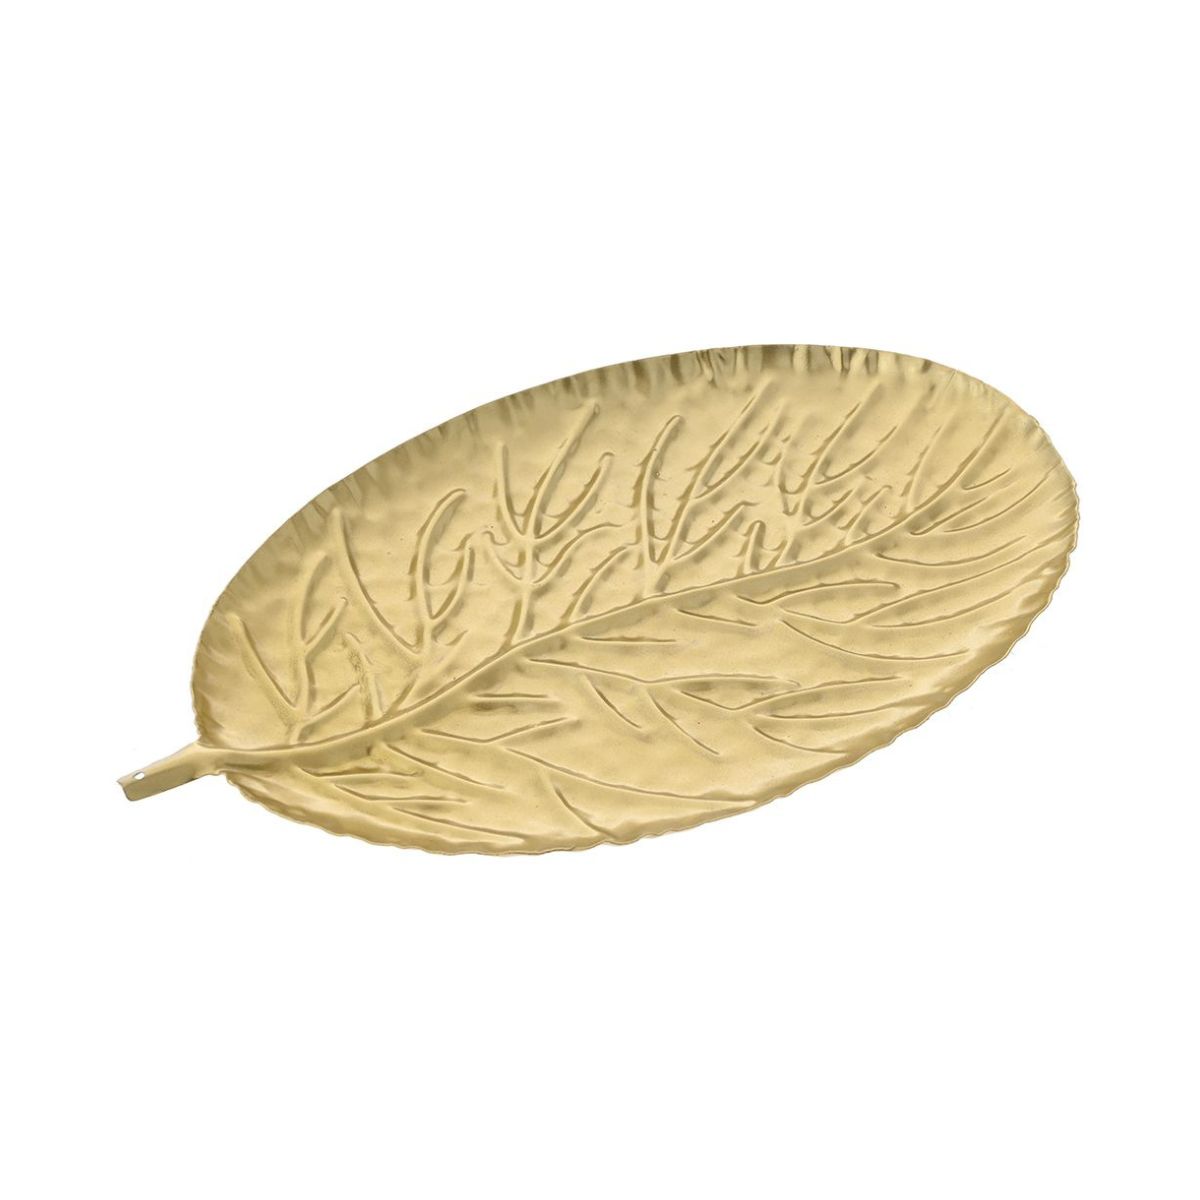 Μία μικρή χρυσή πιατέλα σε σχήμα φύλλου